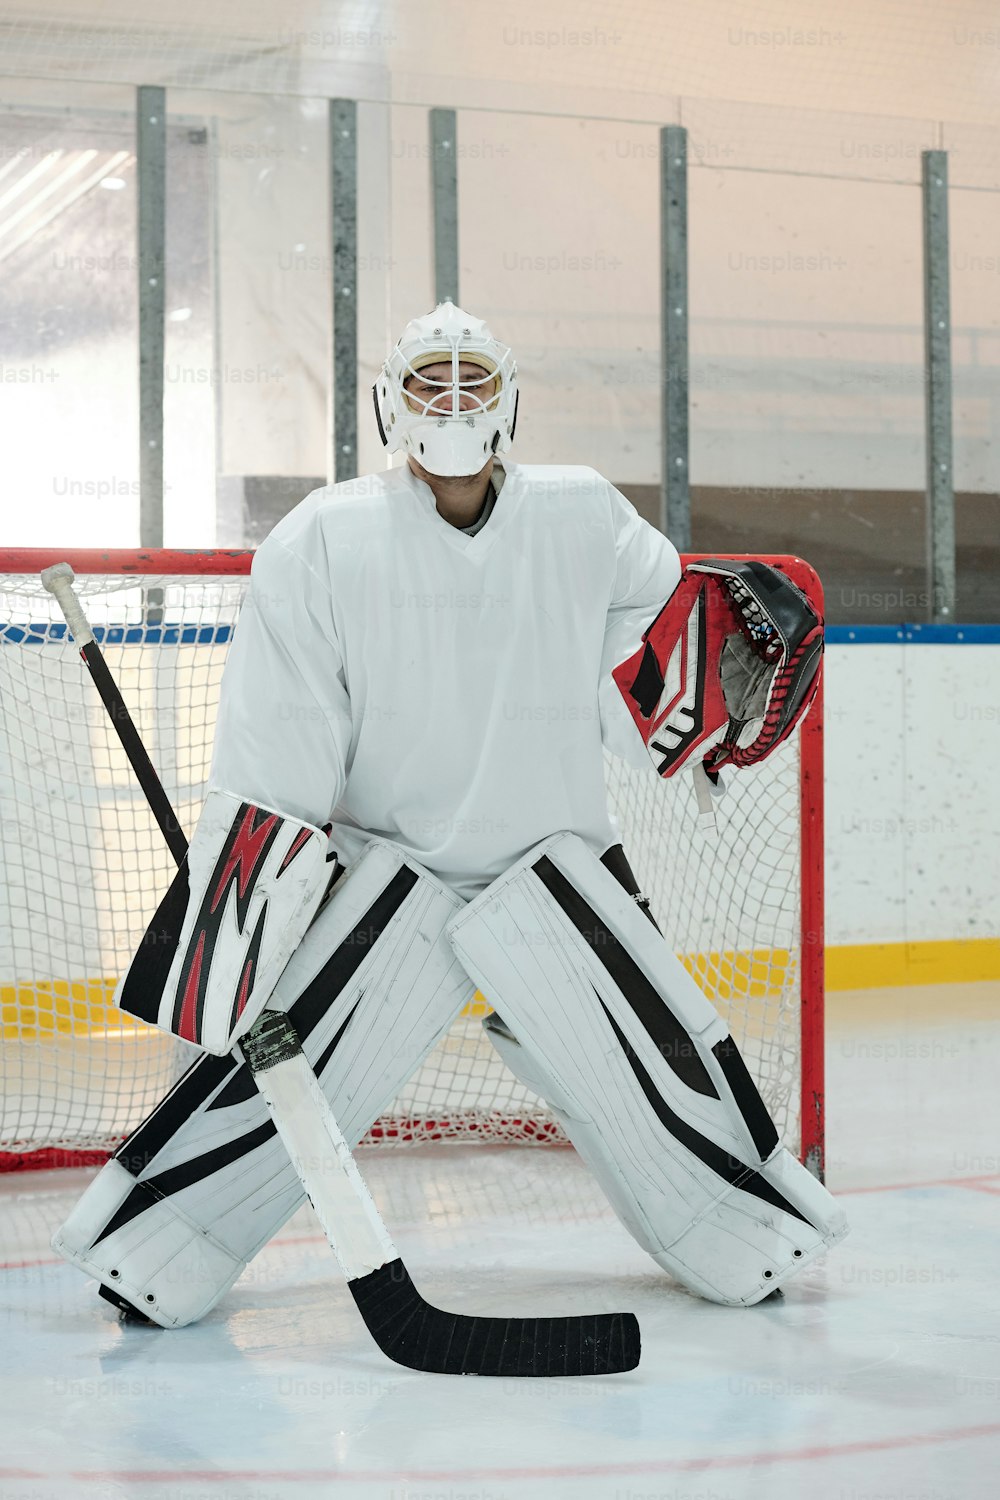 Giocatore di hockey contemporaneo in uniforme sportiva, casco protettivo e guanti che tengono il bastone mentre si trova sulla pista contro la rete e aspetta il disco